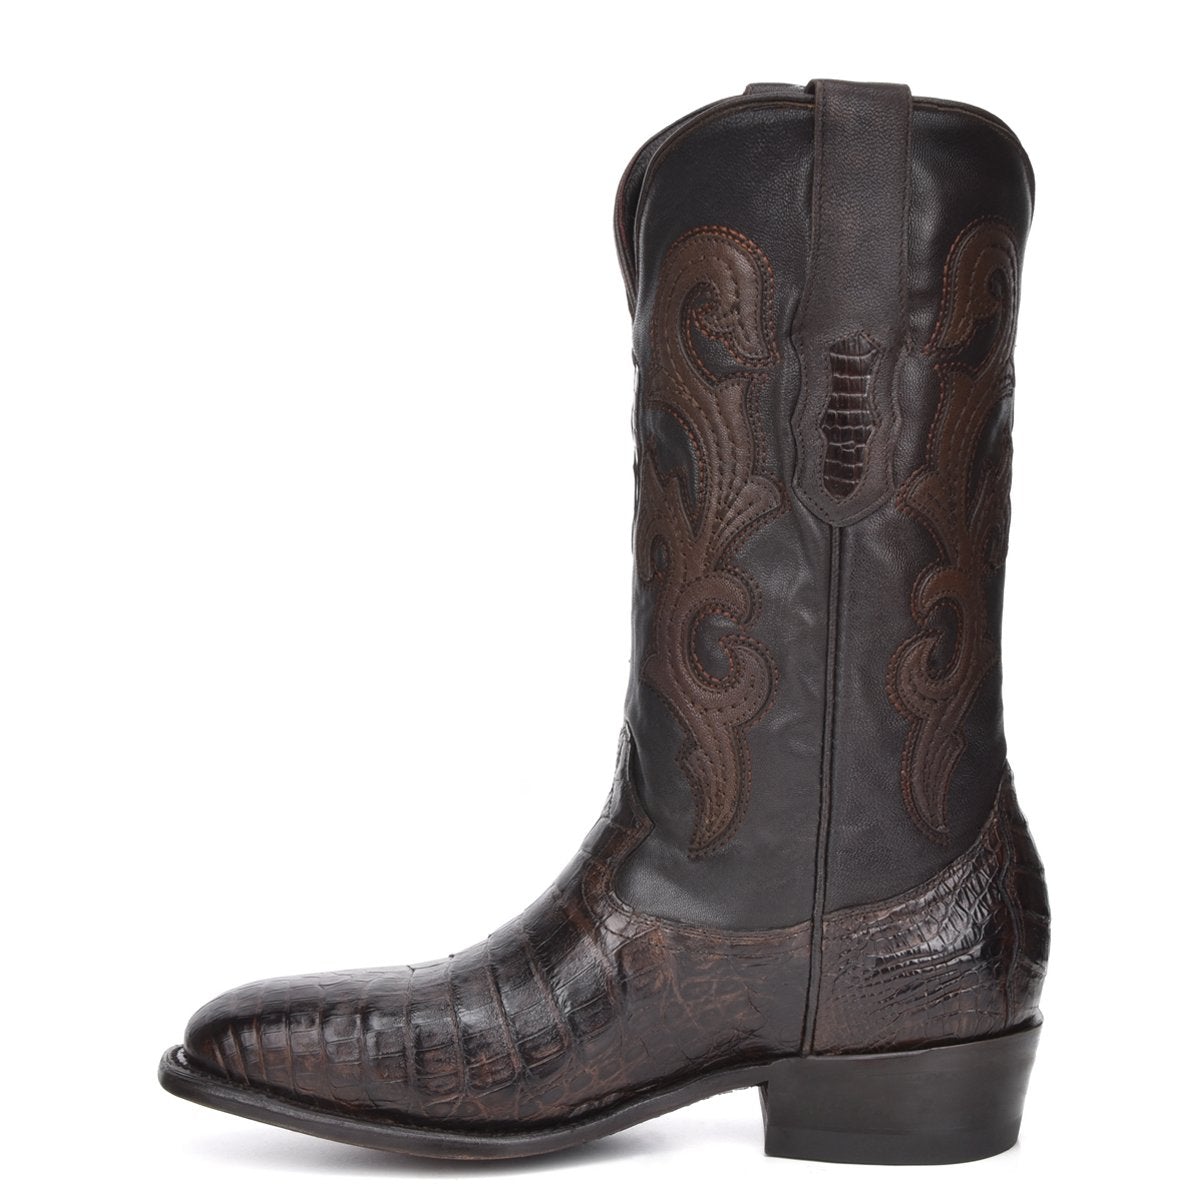 M2144 - Montana brown dress cowboy caiman boots for men-Kuet.us